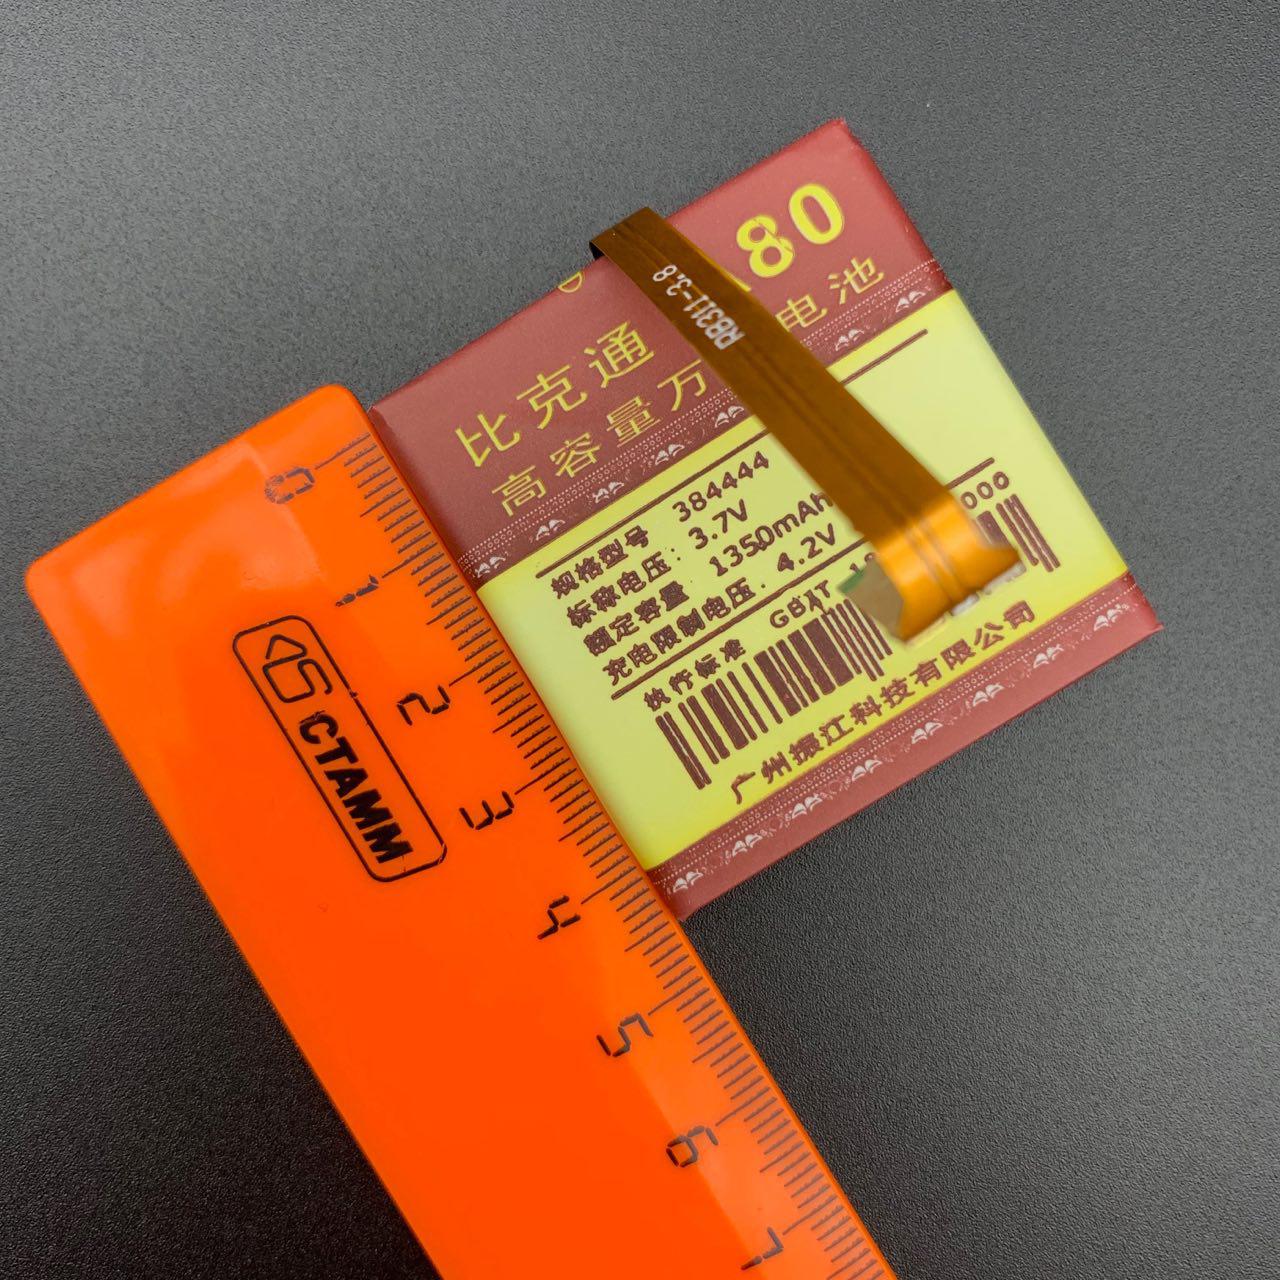 АКБ (Аккумулятор) универсальный A80 с контактами на шлейфе 1350 mAh 4.2V (44x44x38мм, 44x44x3.8мм).